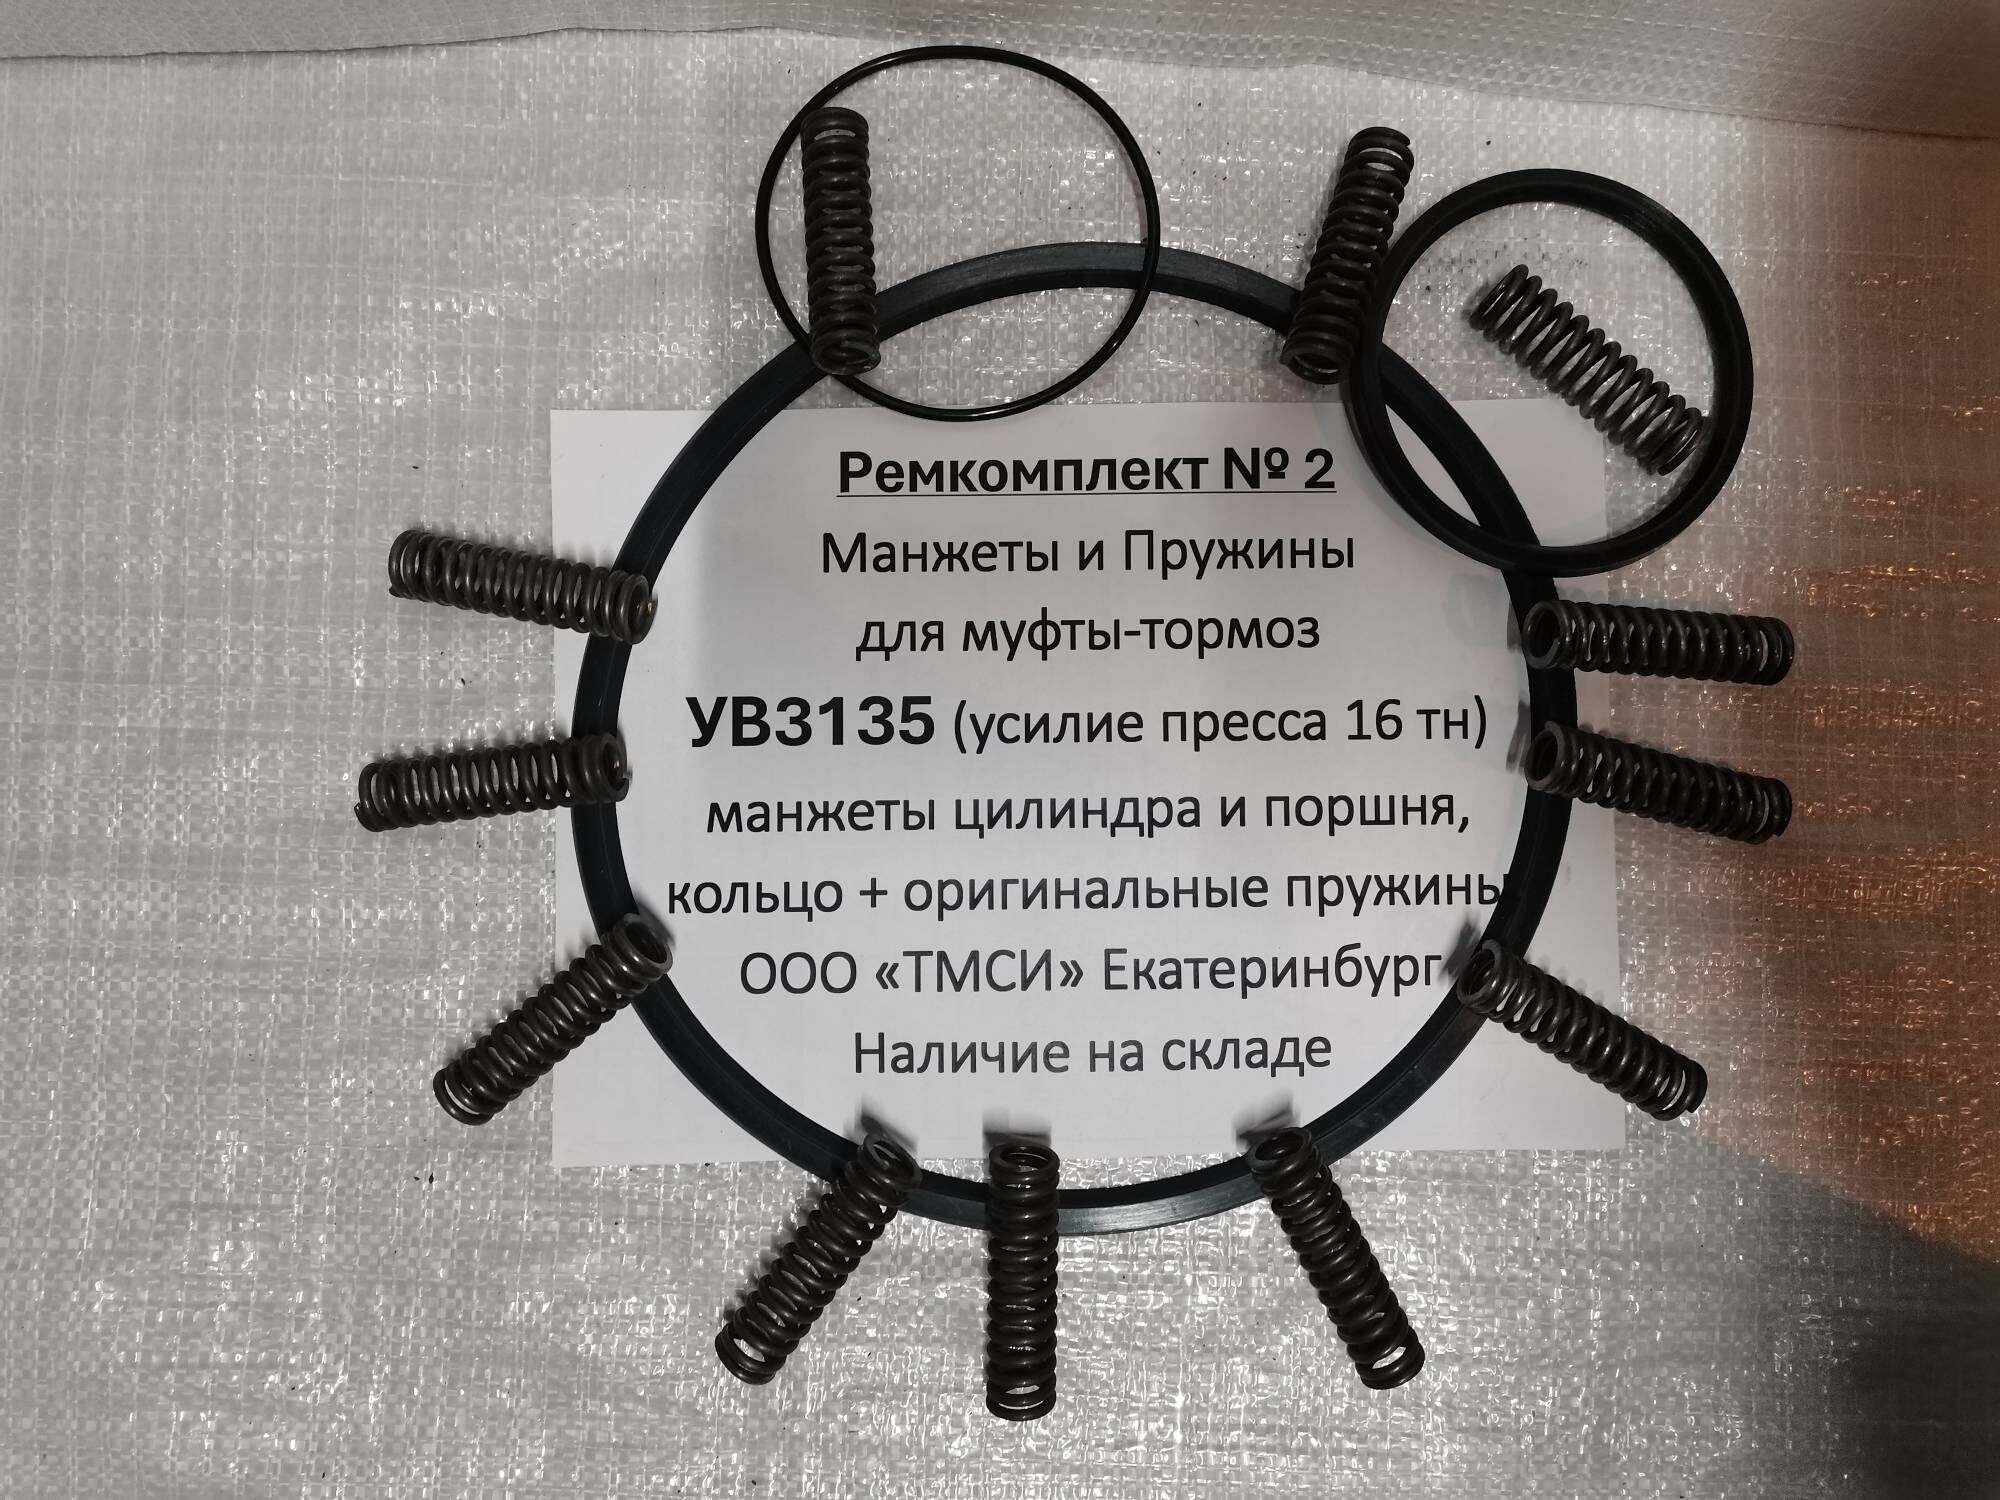 Манжеты и пружины муфта-тормоз УВ3135 Ремкомплект №2. Оригинал